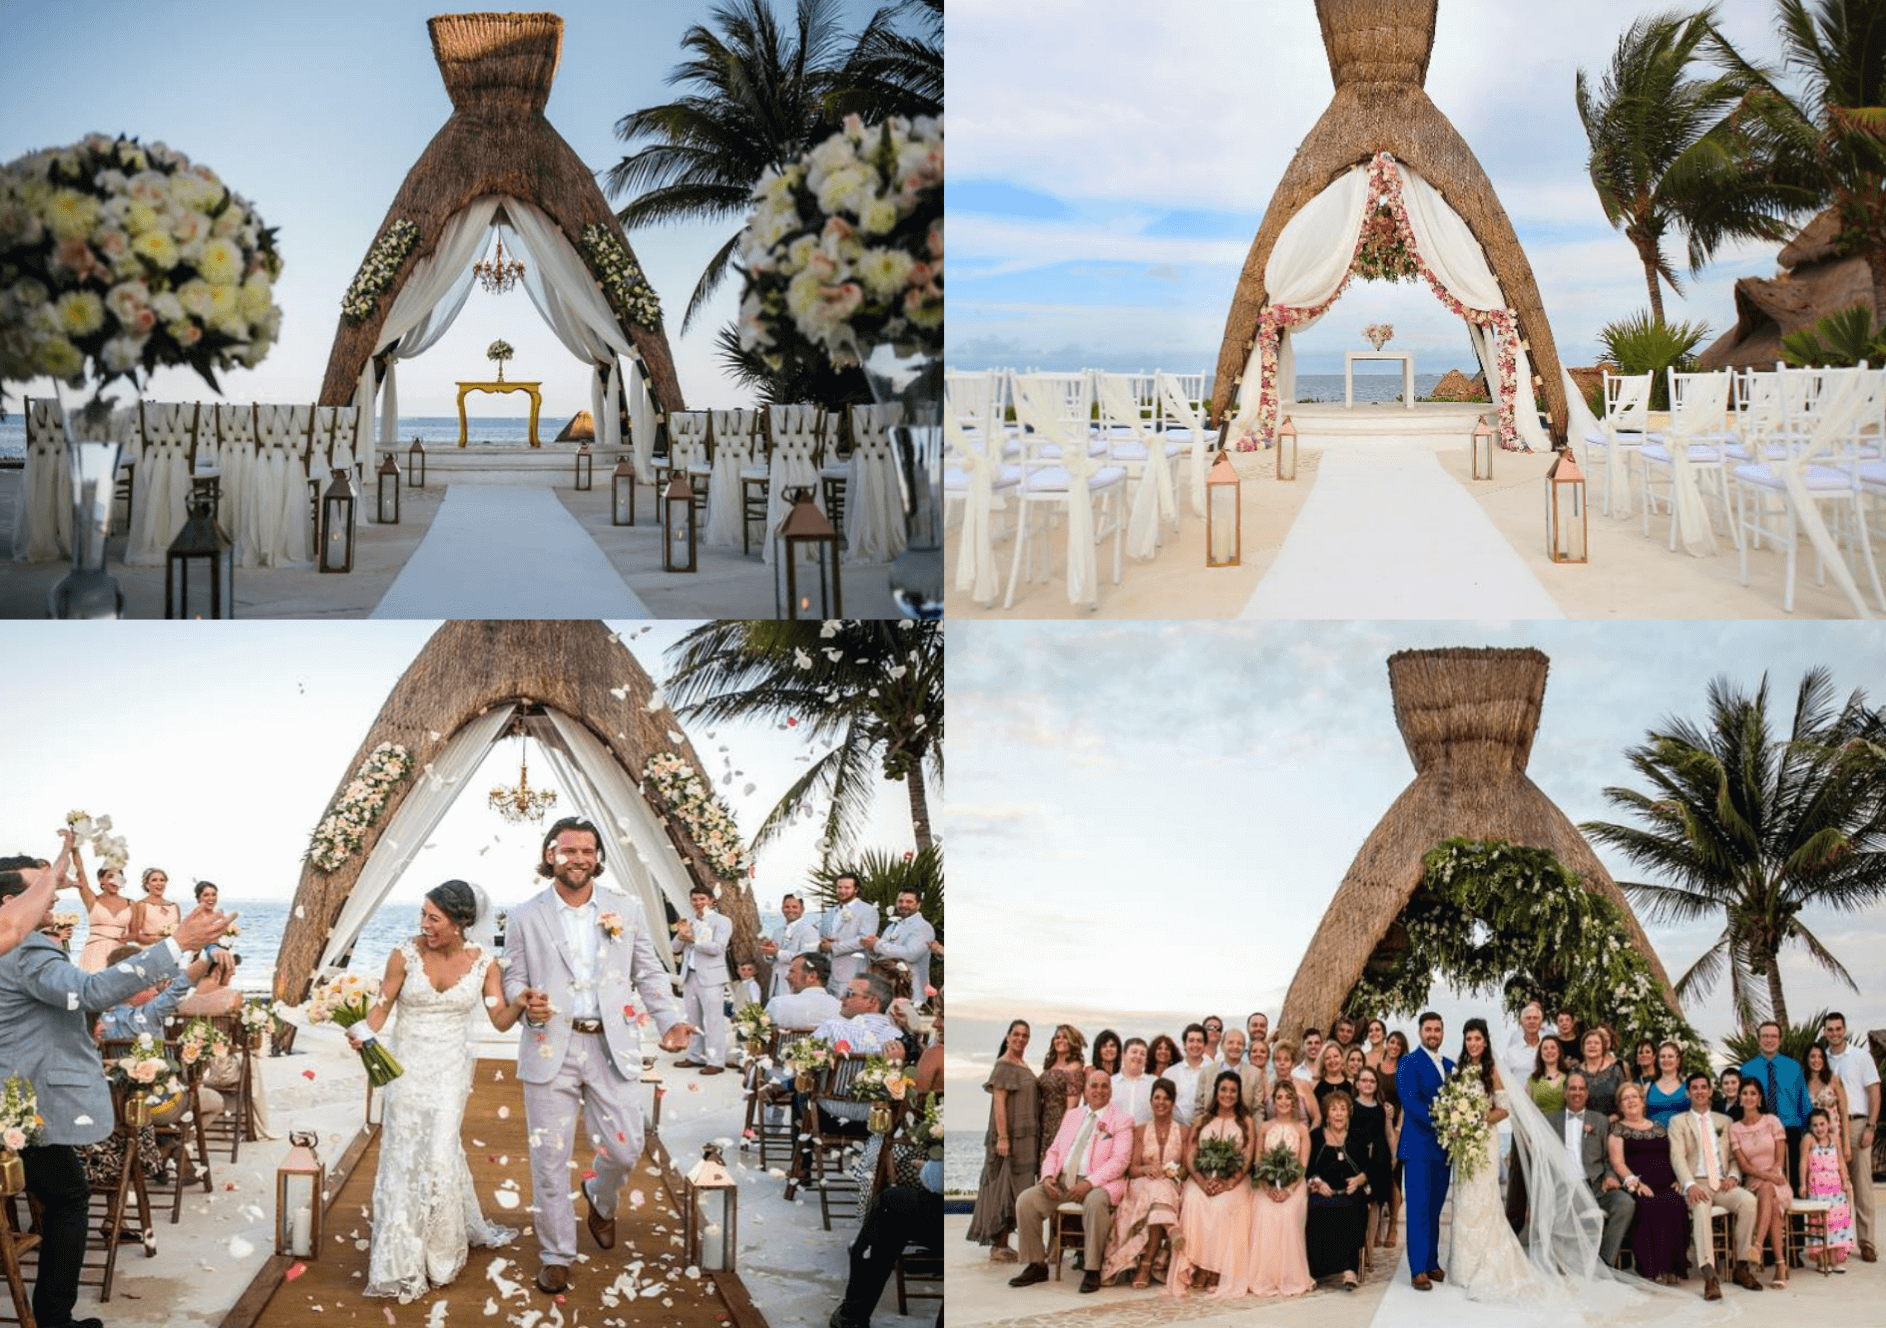 wedding gazebo set up at dreams riviera cancun